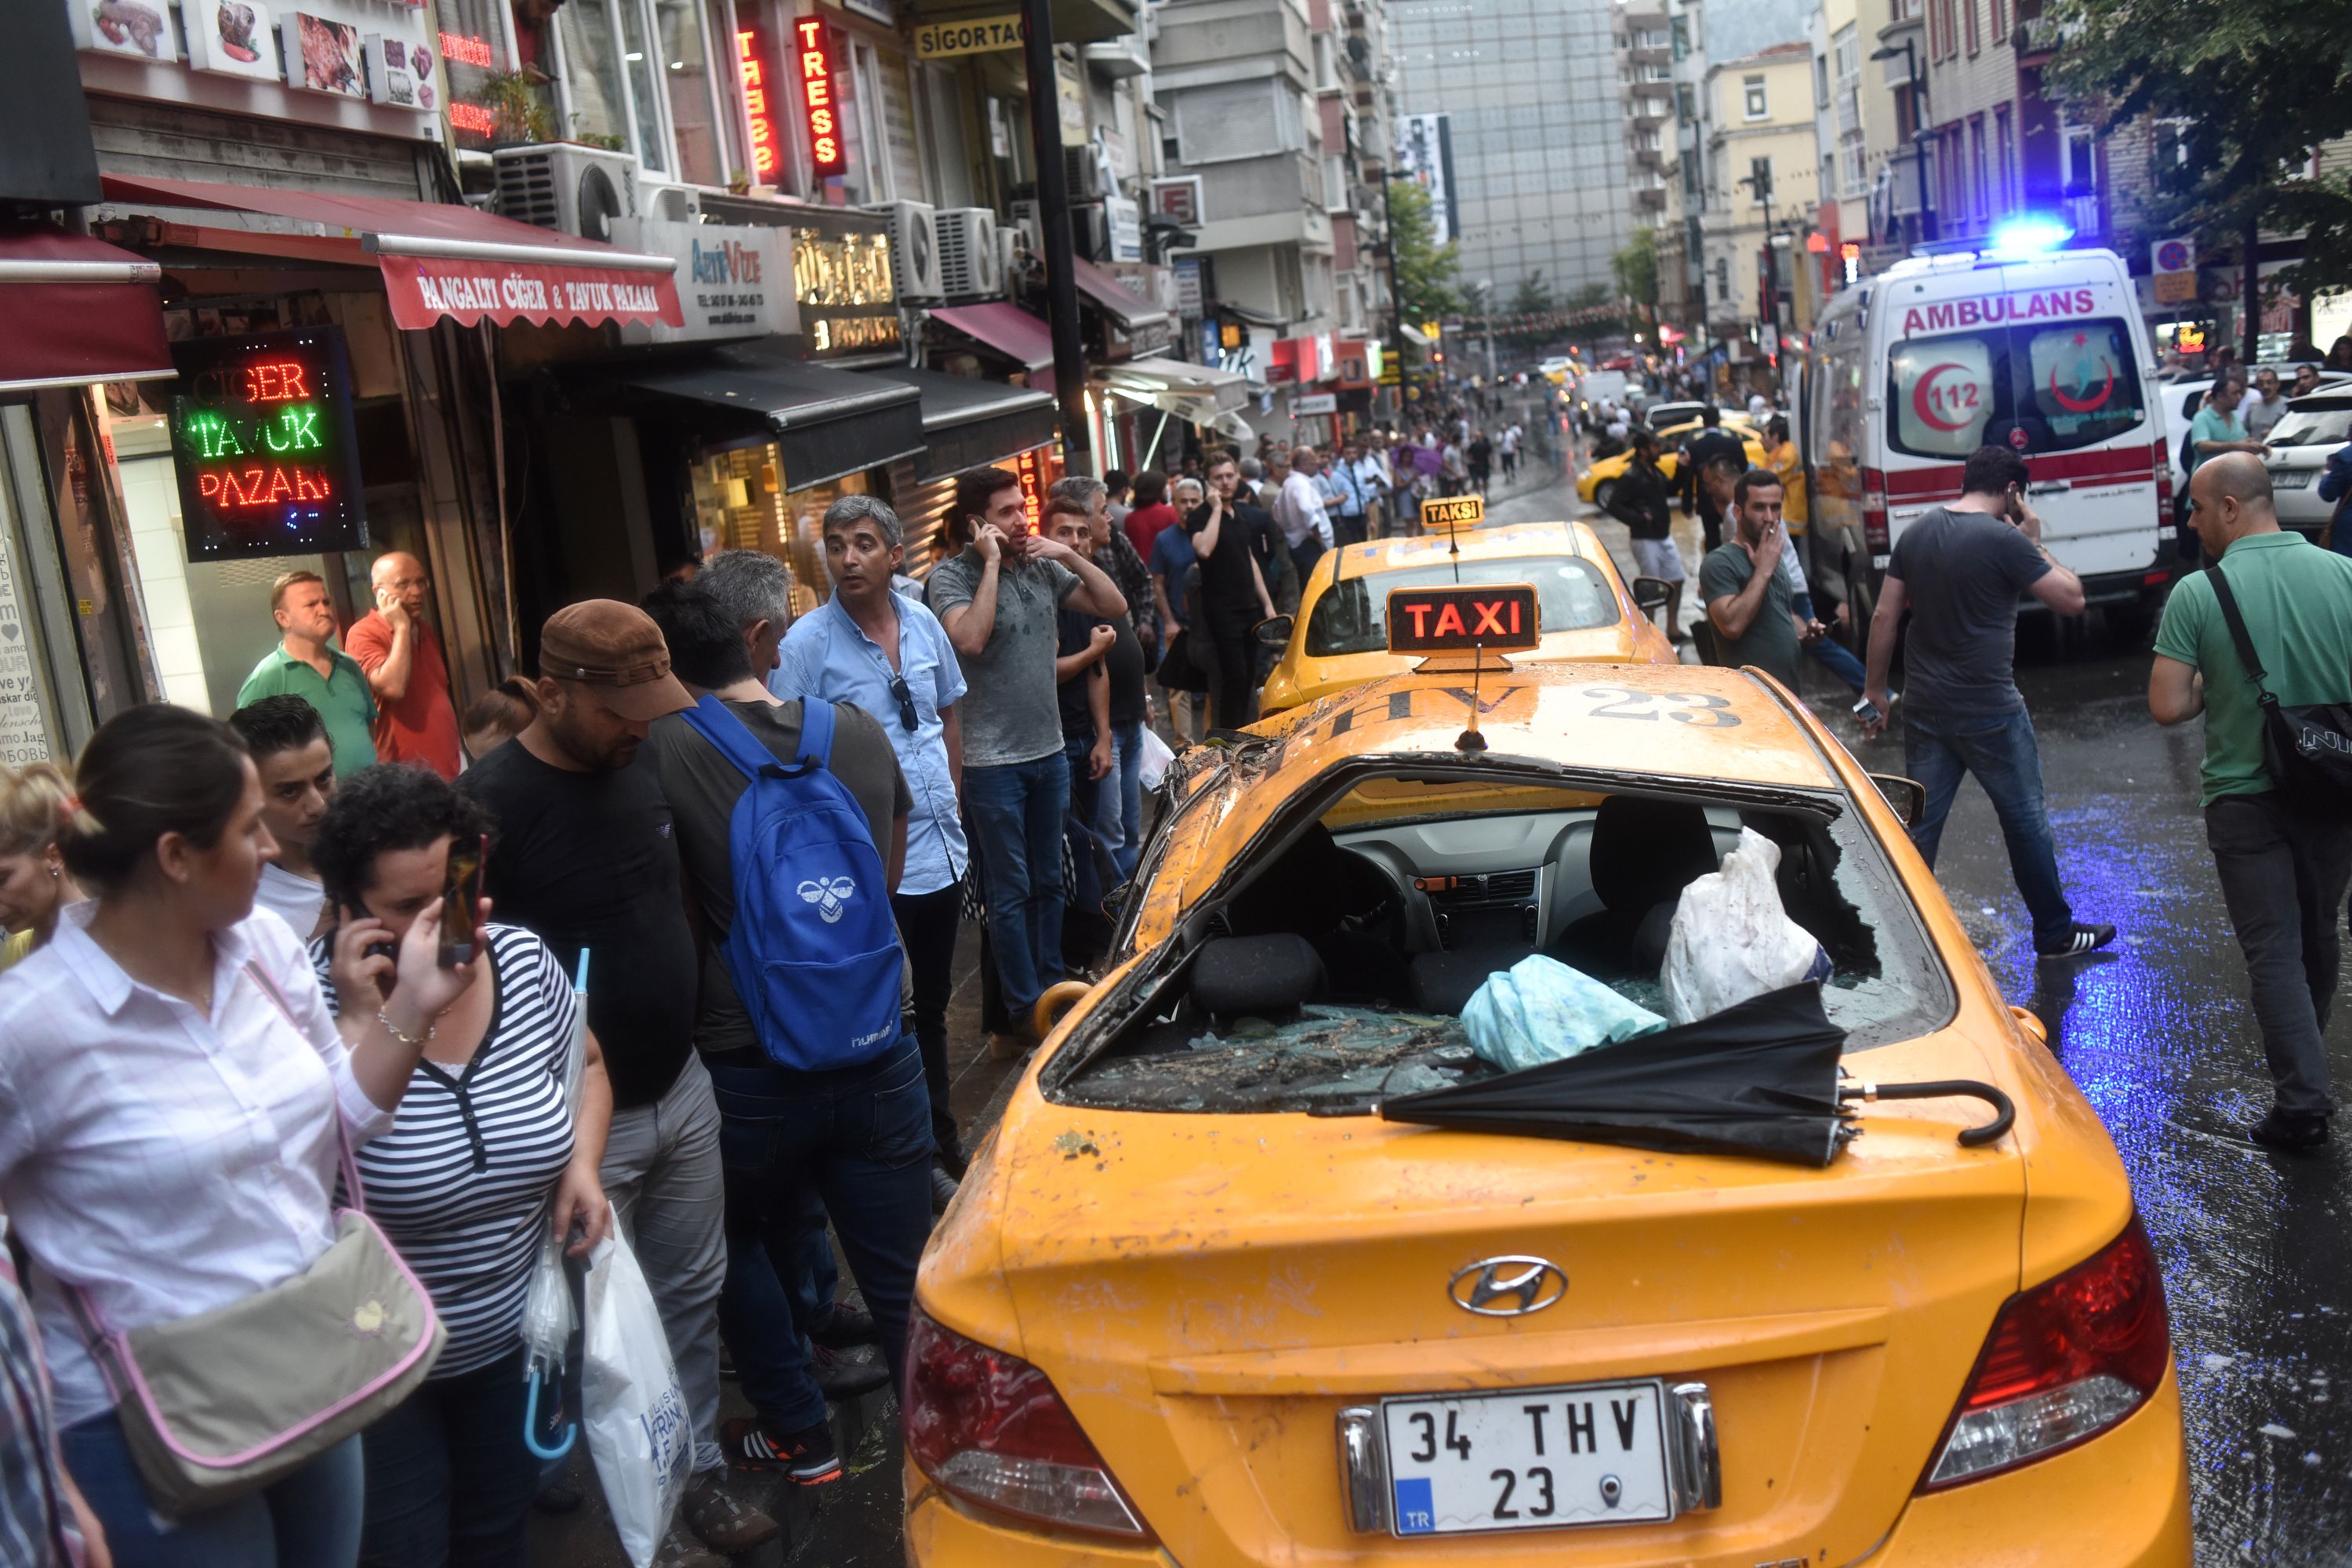 تحطم زجاج سيارة تاكسى فى شوارع اسطنبول نتيجة للعاصفة الشديدة